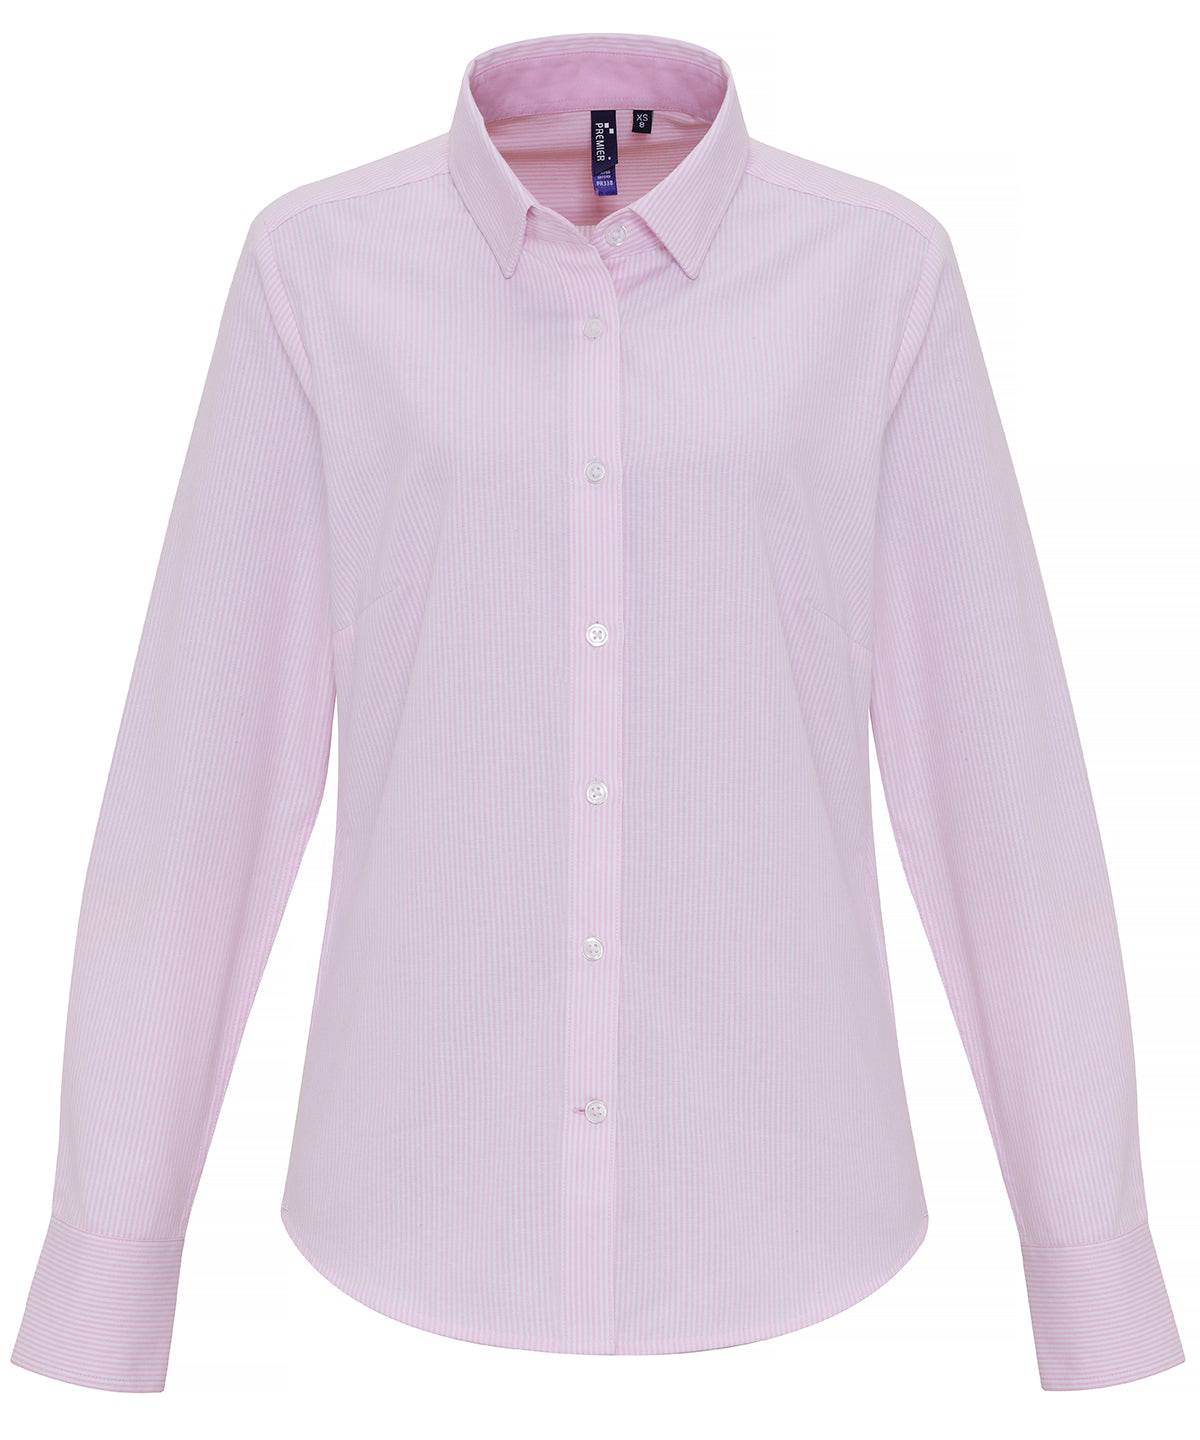 White/Pink - Women's cotton-rich Oxford stripes blouse